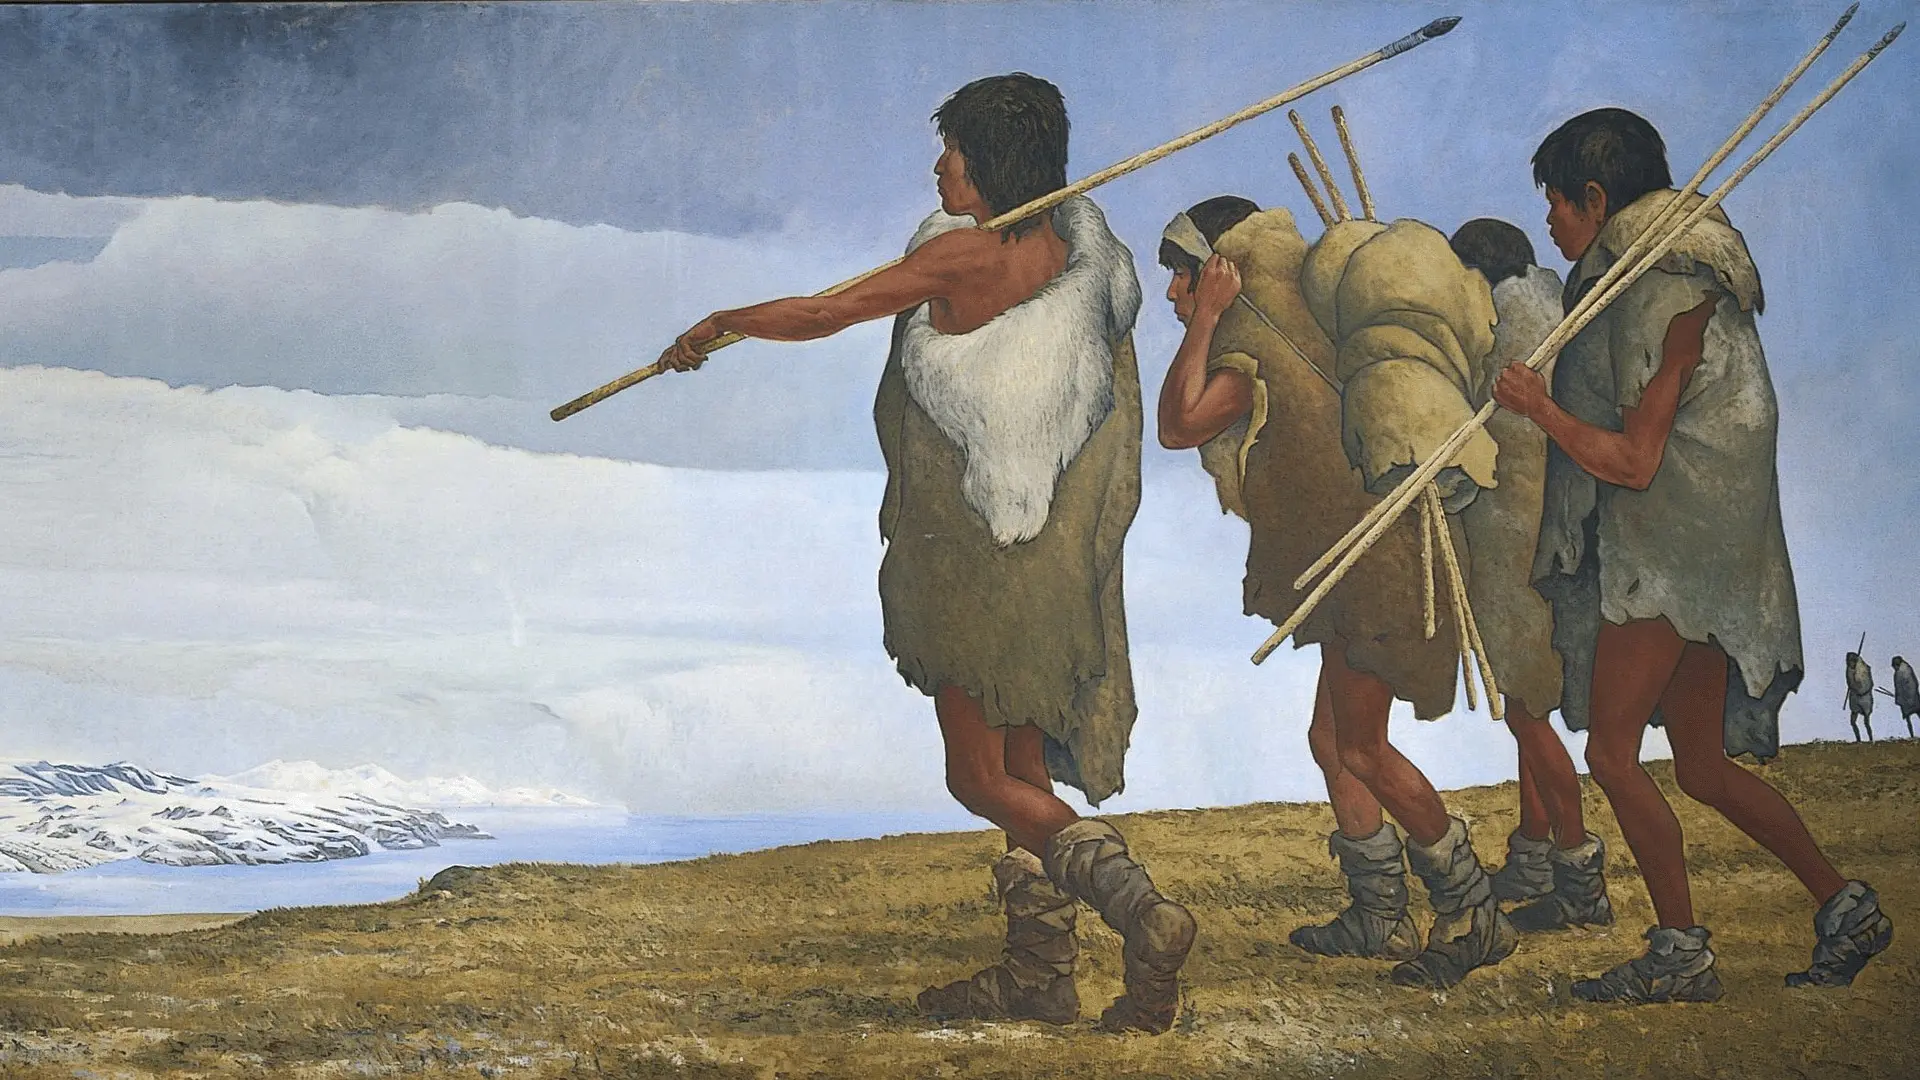 Recreación de un artista de la primera migración humana a América del Norte desde el otro lado del Mar de Bering.